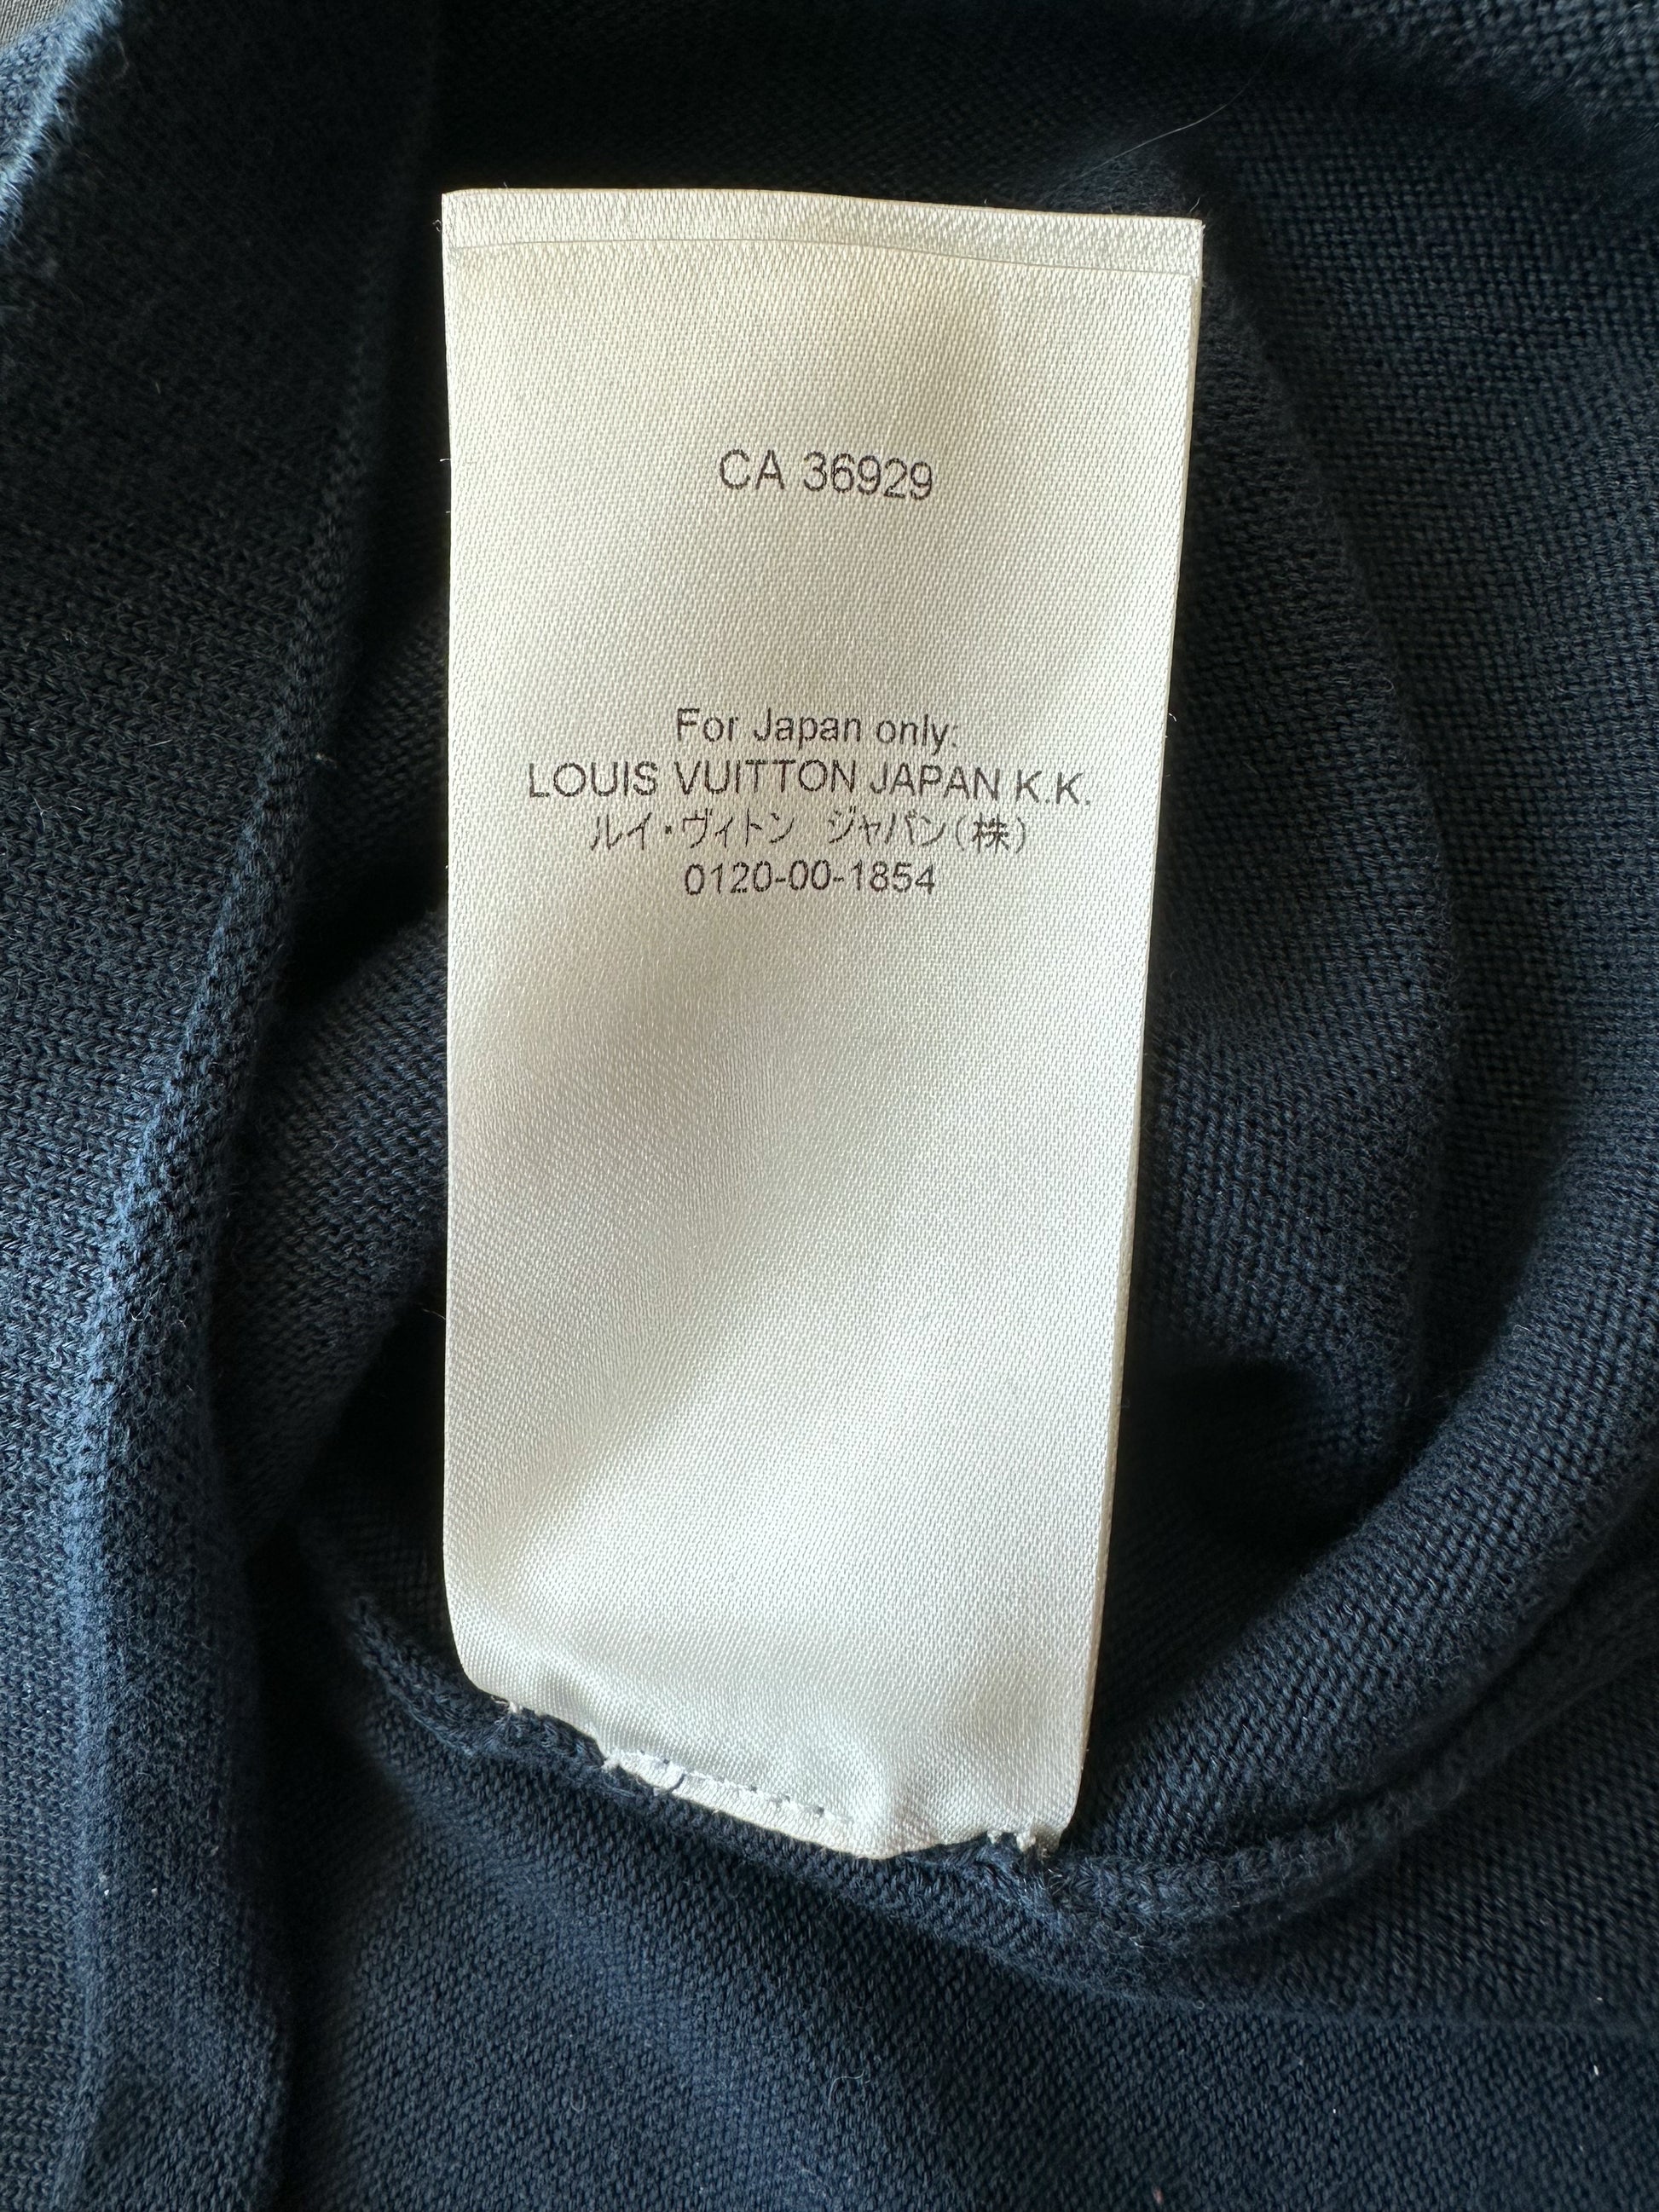 Louis Vuitton x Nigo Intarsia Jacquard Heart Crewneck – Tenisshop.la